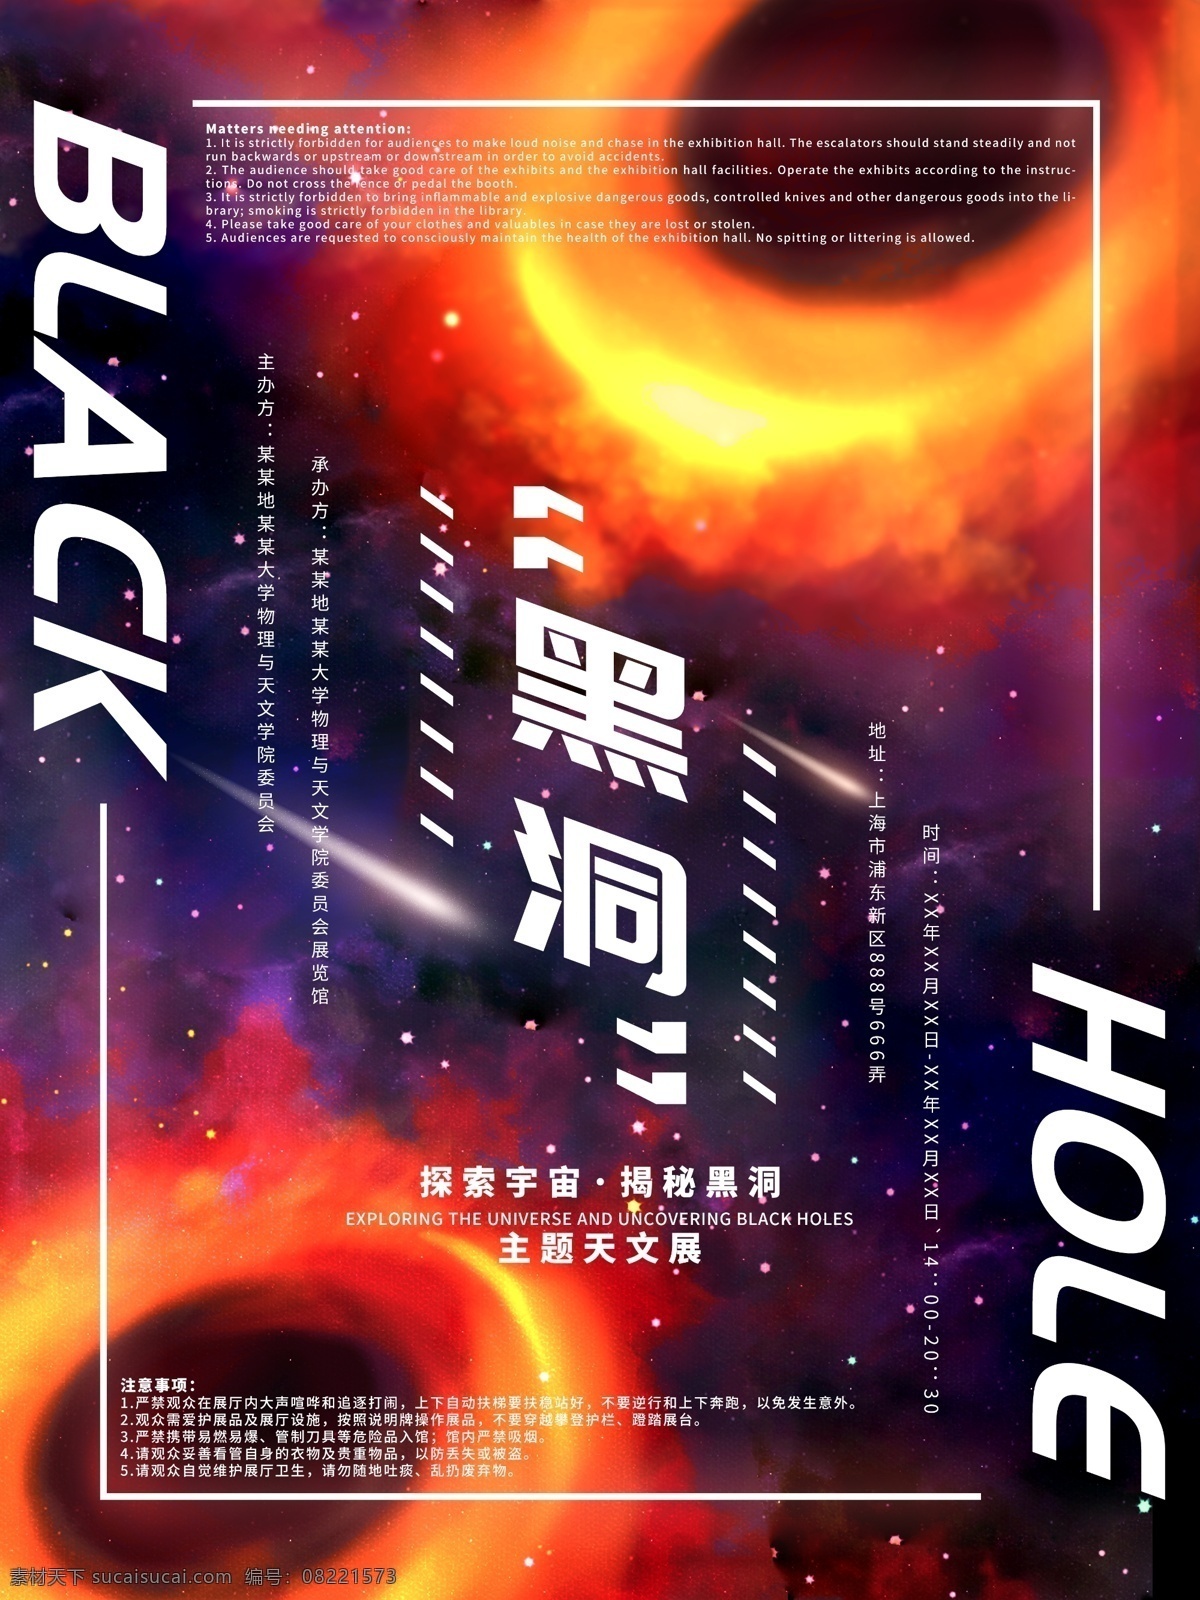 黑洞 主题 宇宙 天文 展 炫 酷 手绘 宣传海报 宣传 海报 商业海报 炫酷 迷幻